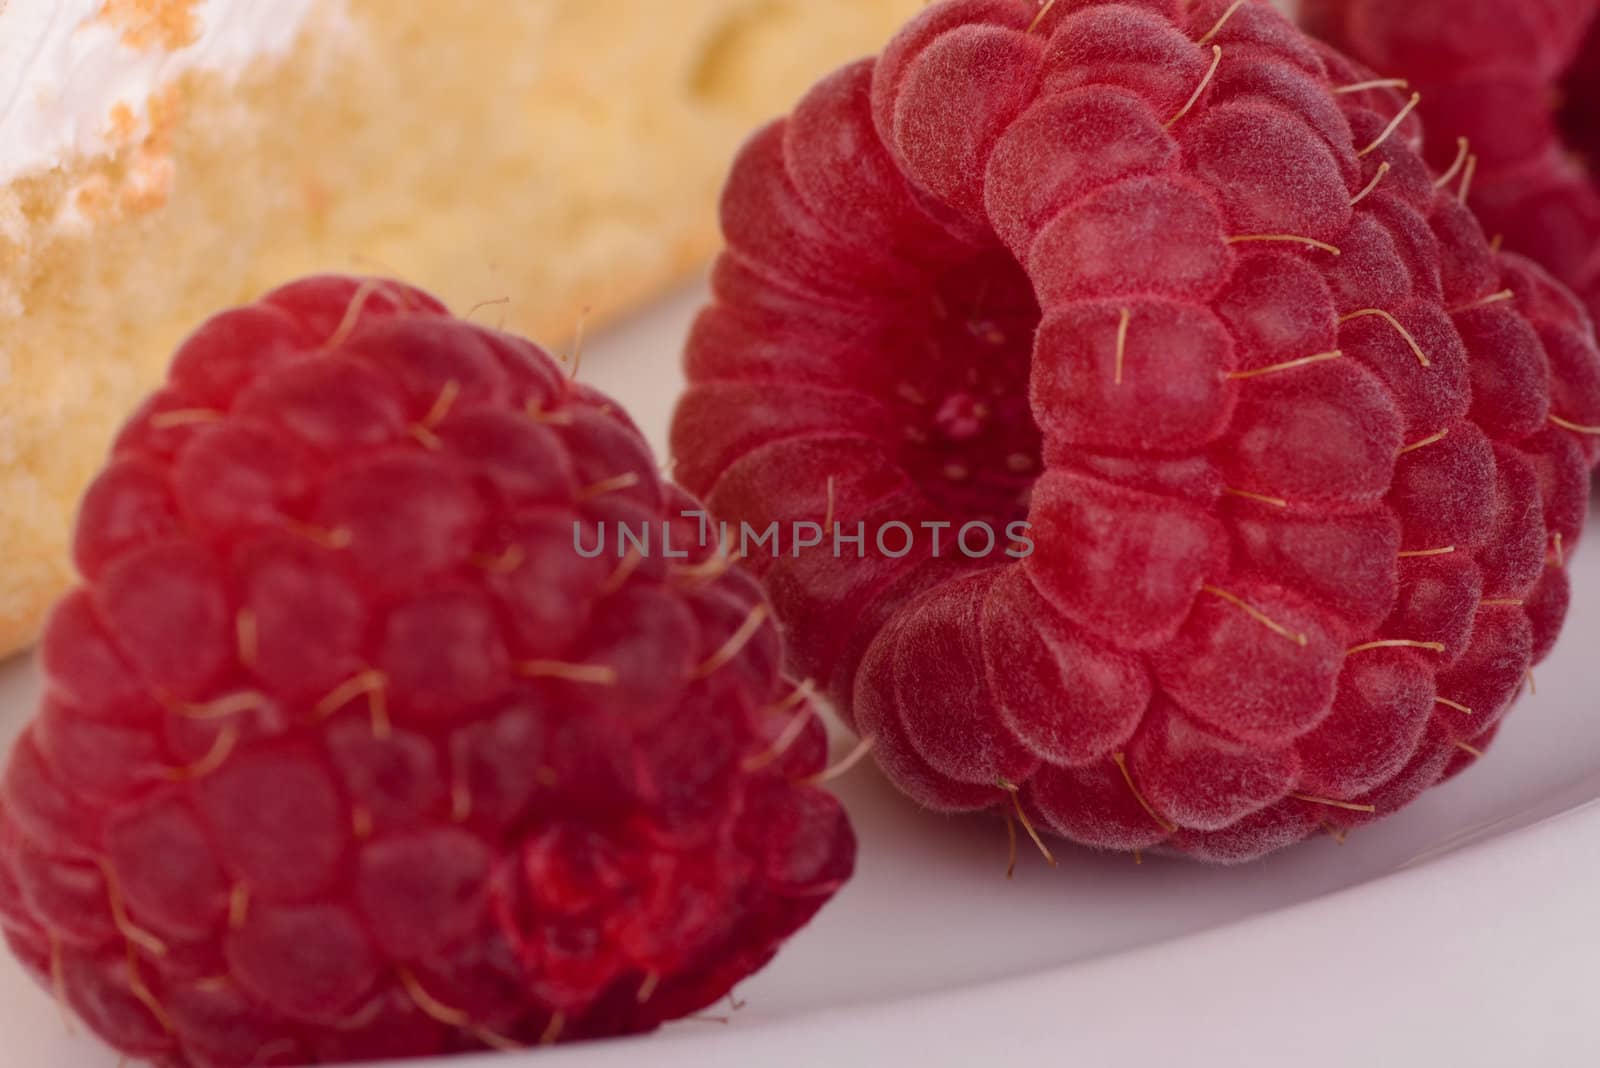 Ripe raspberries. by Carpeira